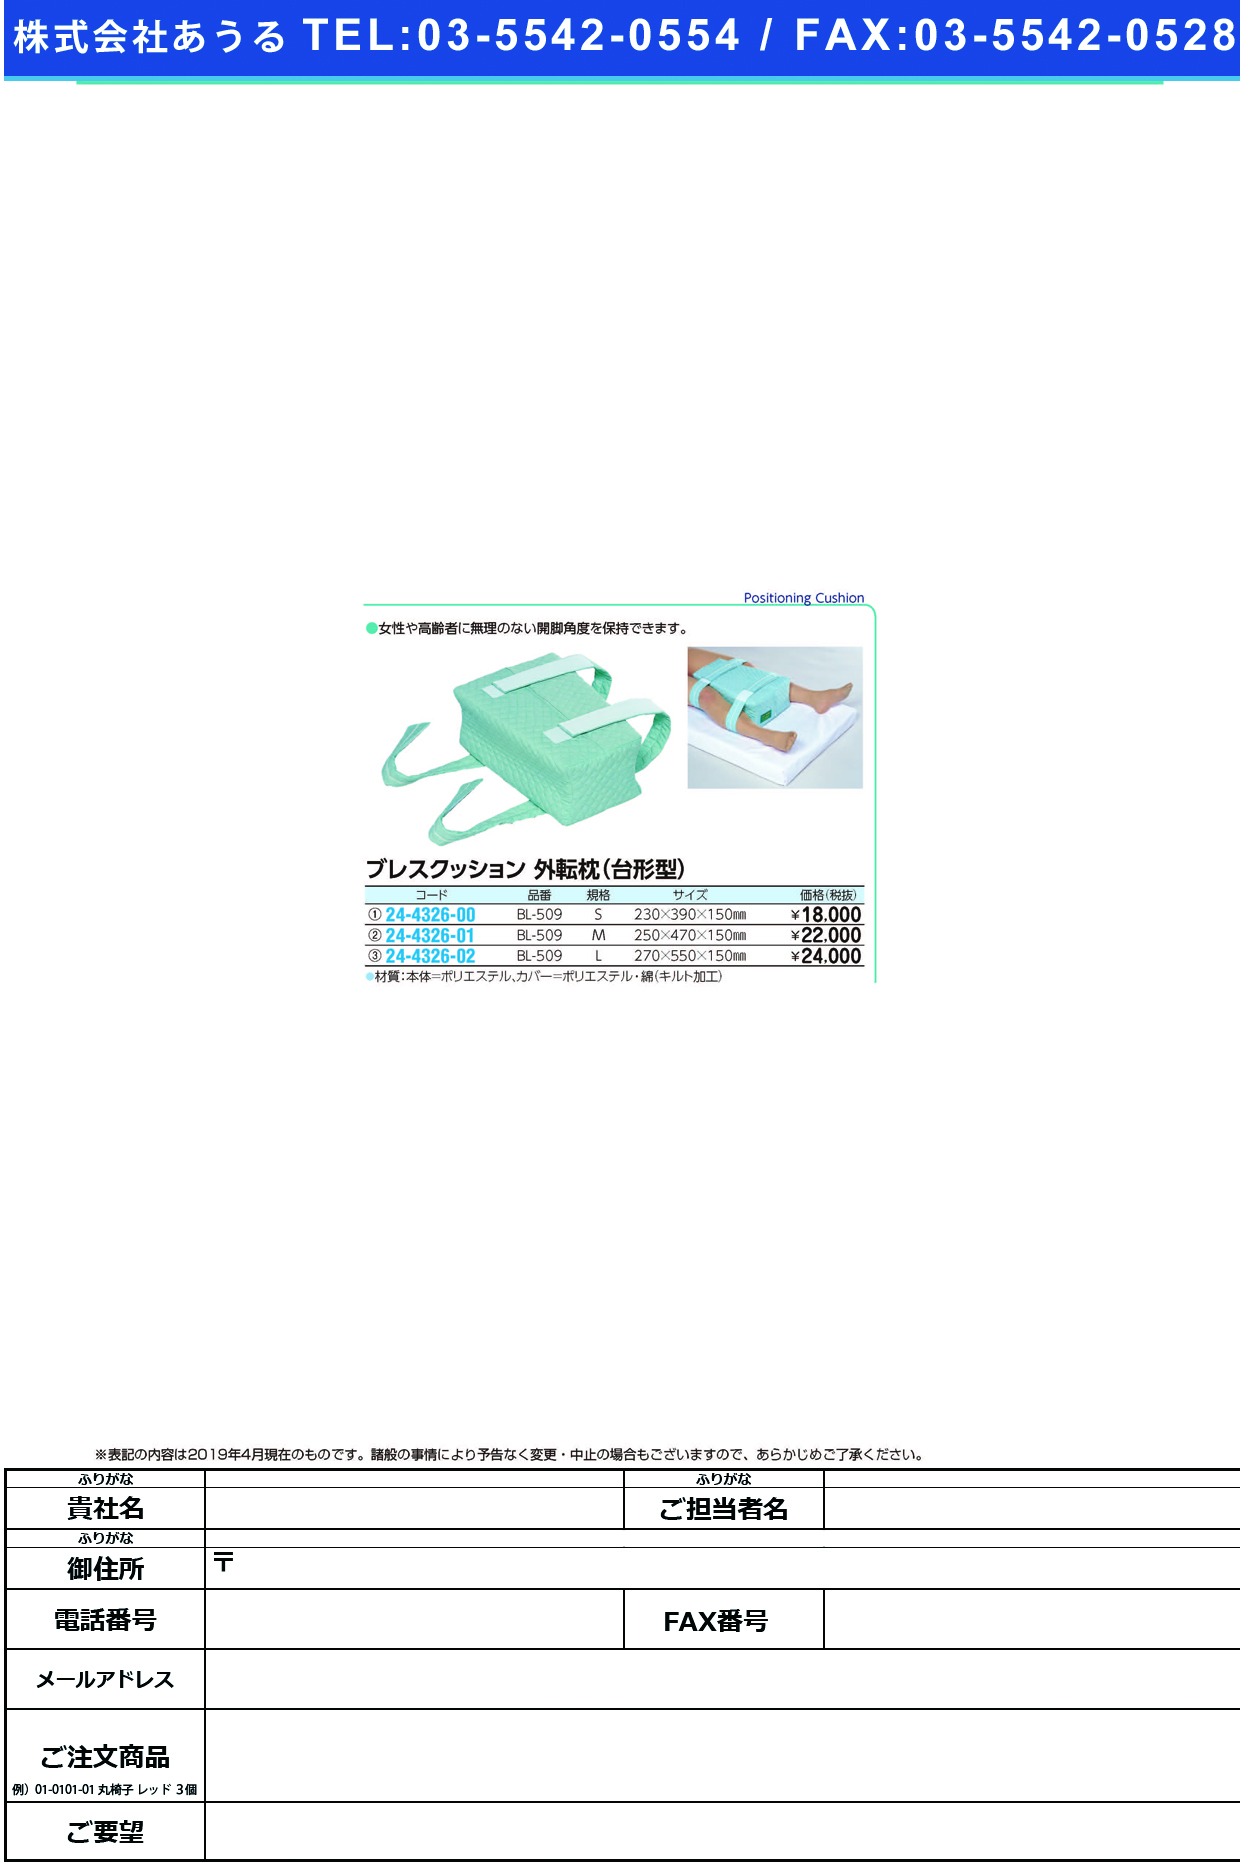 (24-4326-01)ブレスクッション（外転枕・台形型） BL-509(M) ﾌﾞﾚｽｸｯｼｮﾝ(ｶﾞｲﾃﾝﾏｸﾗ)【1個単位】【2019年カタログ商品】